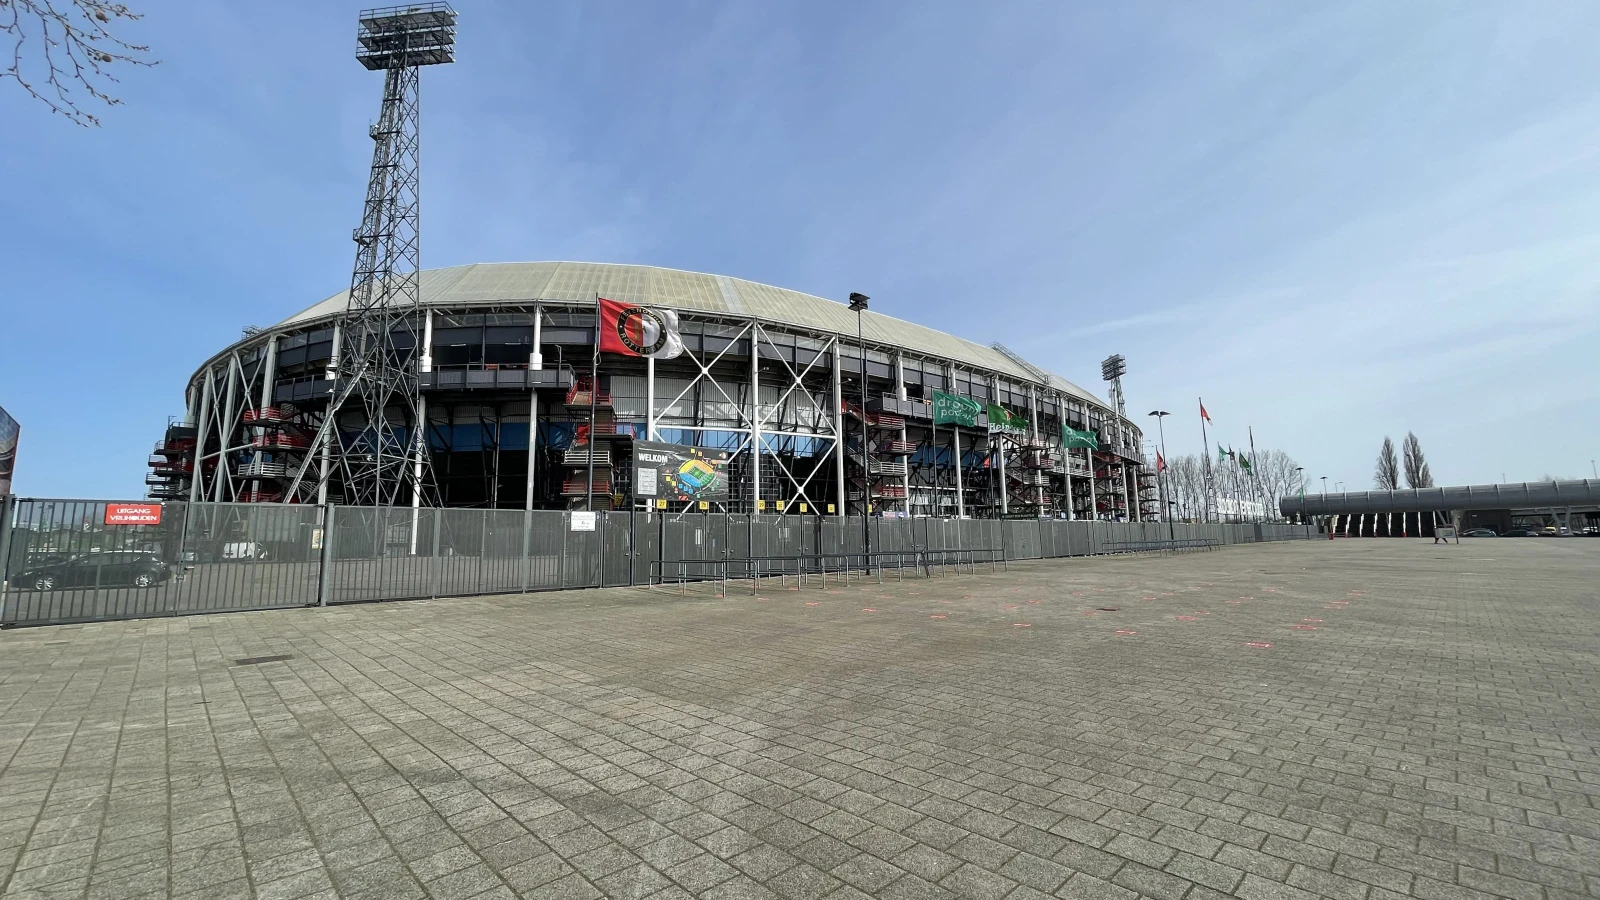 Interlands van Feyenoorders | Wat hebben de andere Feyenoorders gedaan?